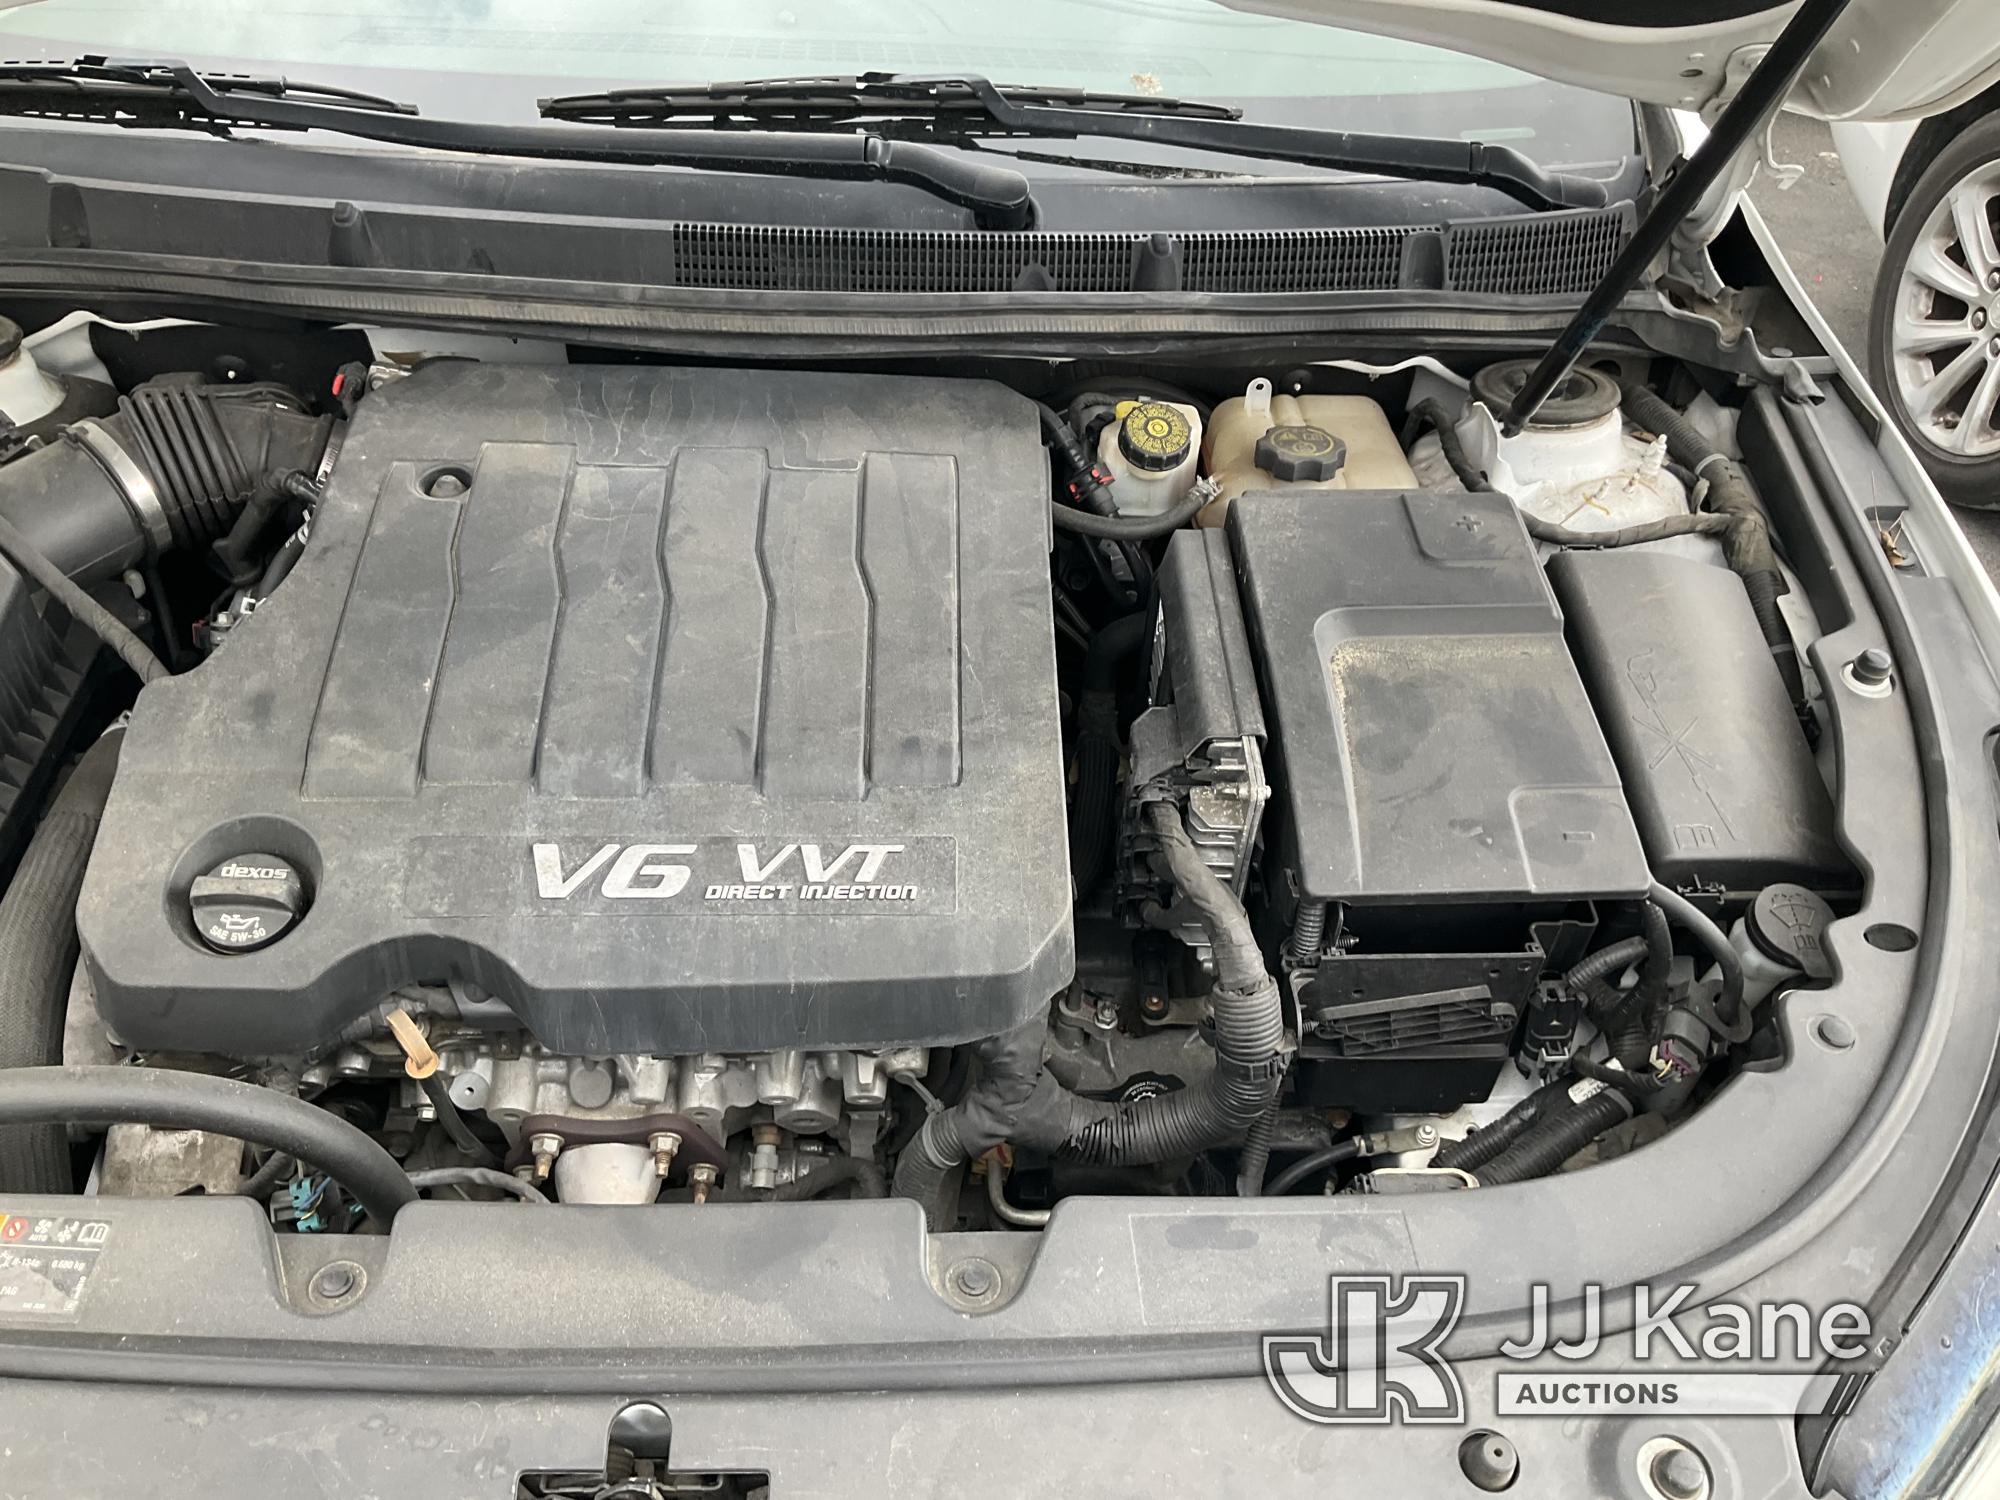 (Jurupa Valley, CA) 2016 Buick Lacrosse 4-Door Sedan Runs & Moves, Has Check Engine Light